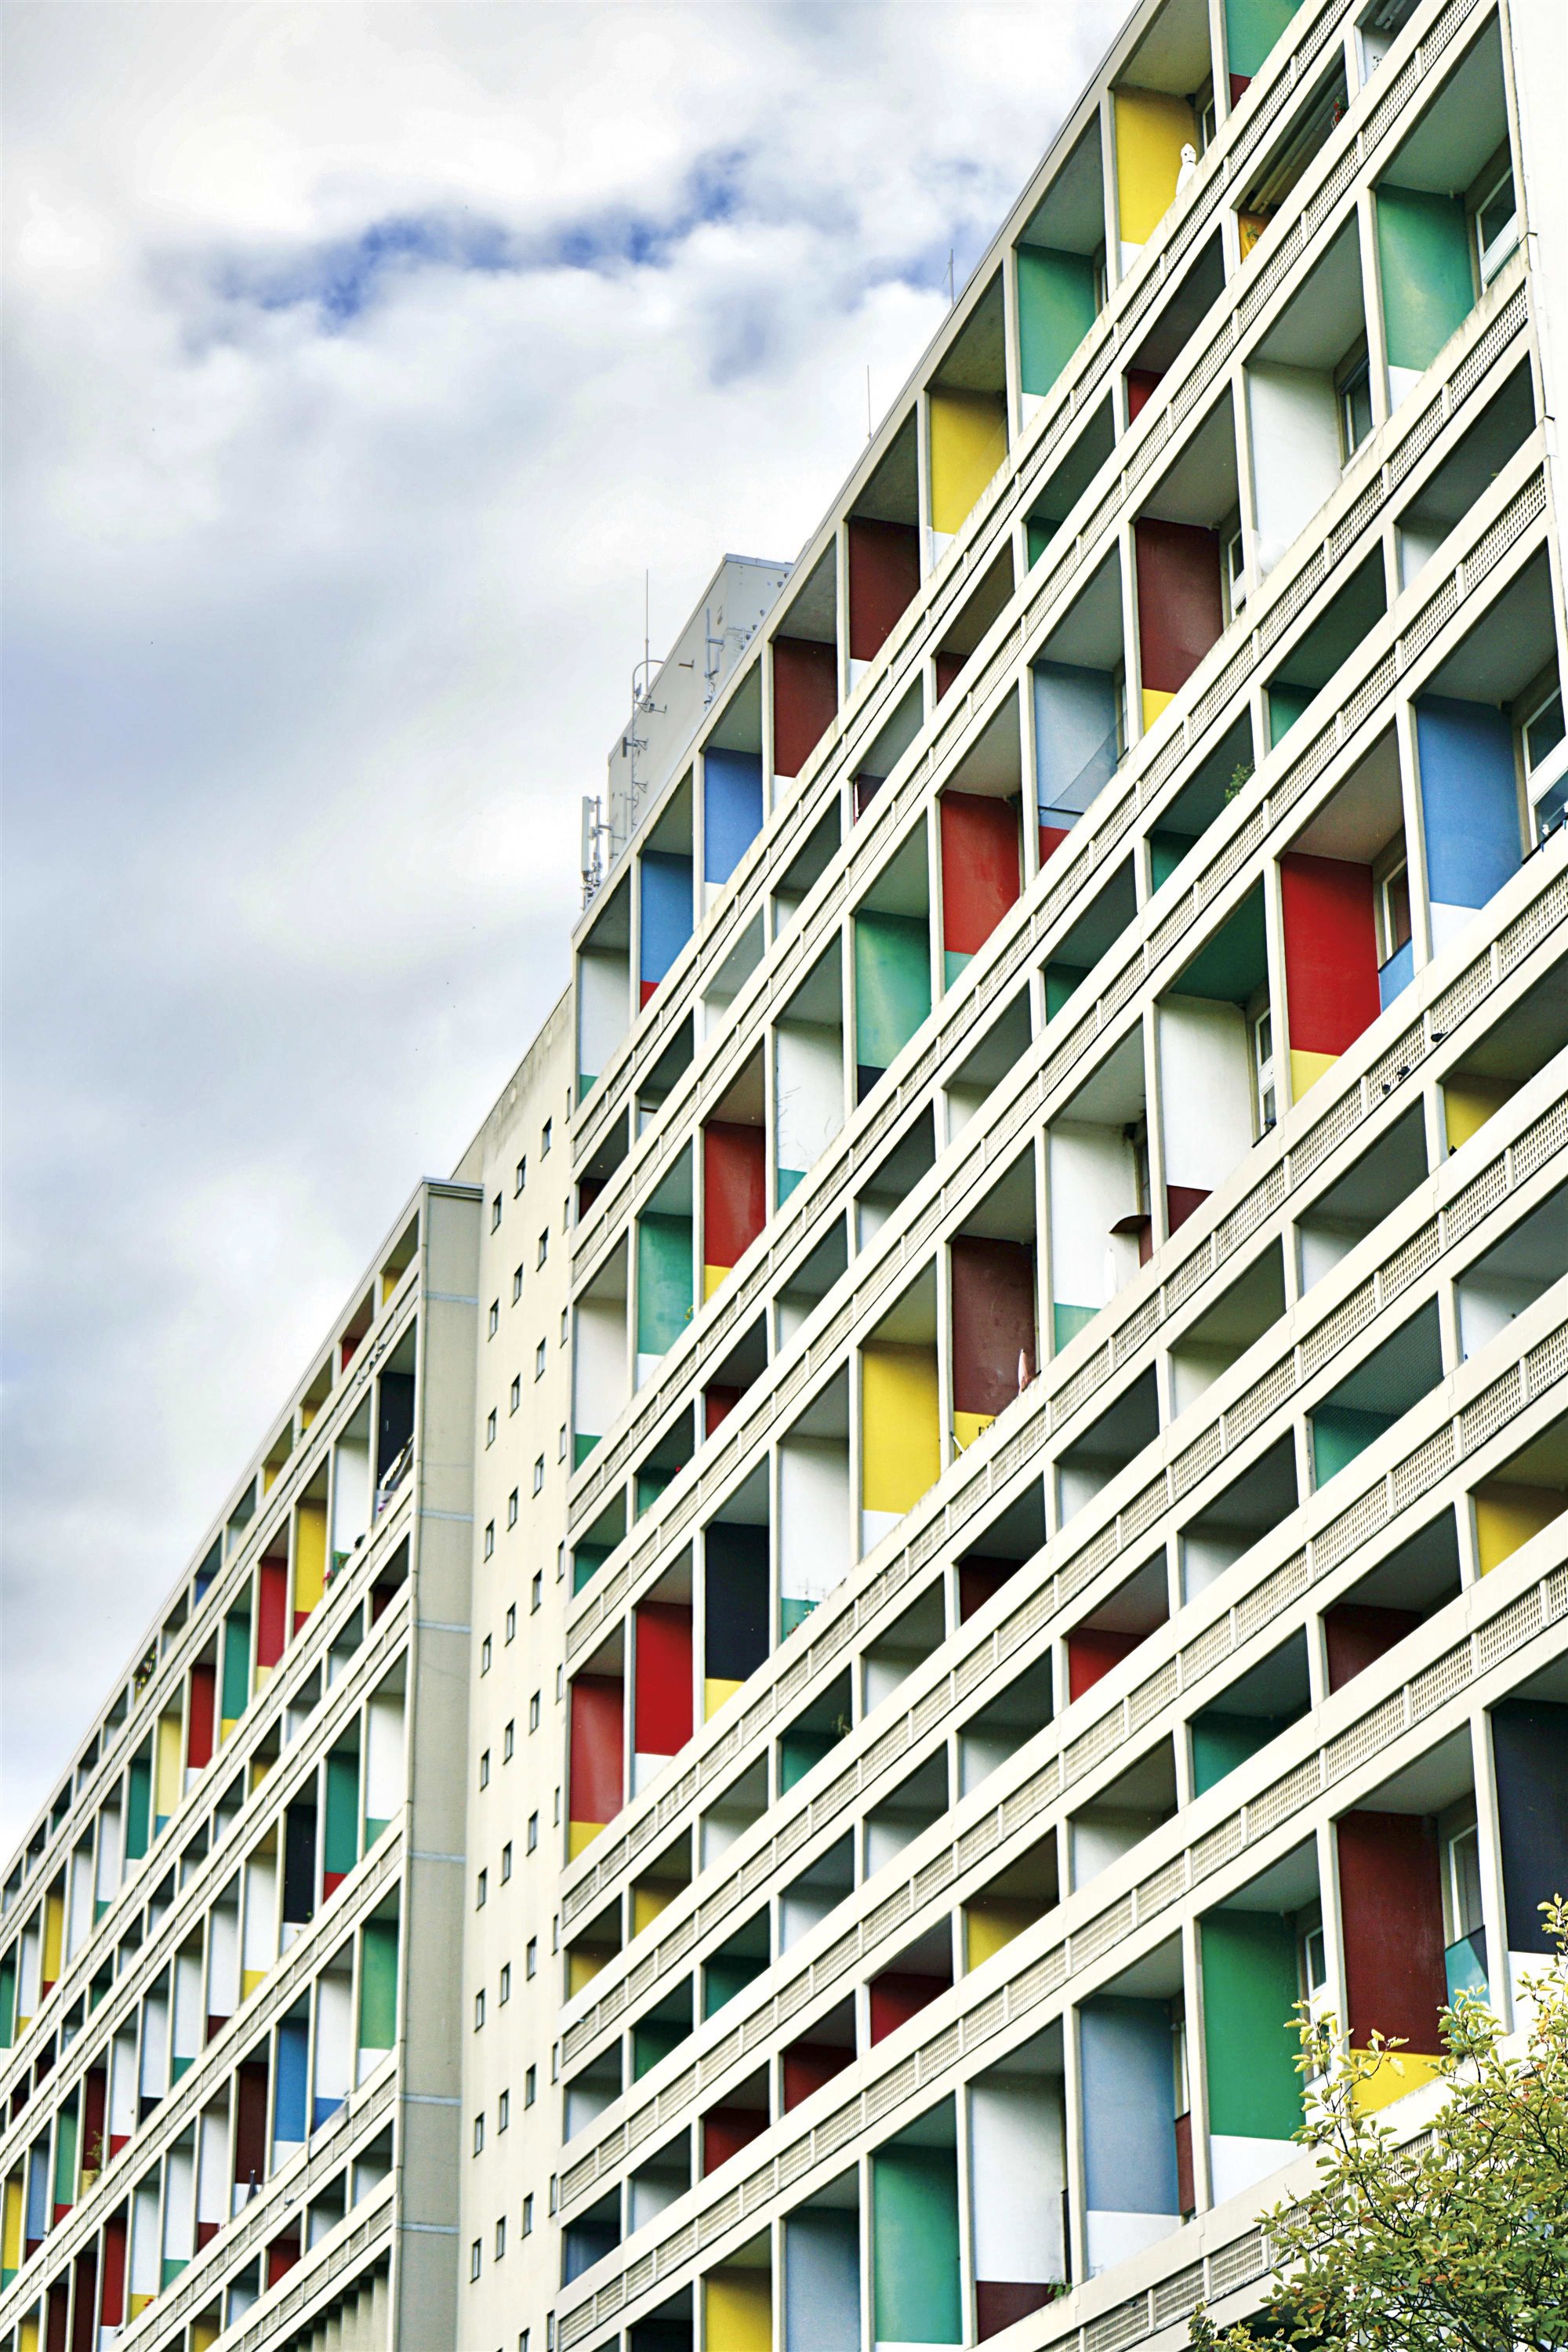 Unite d'habitation de Marsella, edificio Berlín, de Le Corbusier